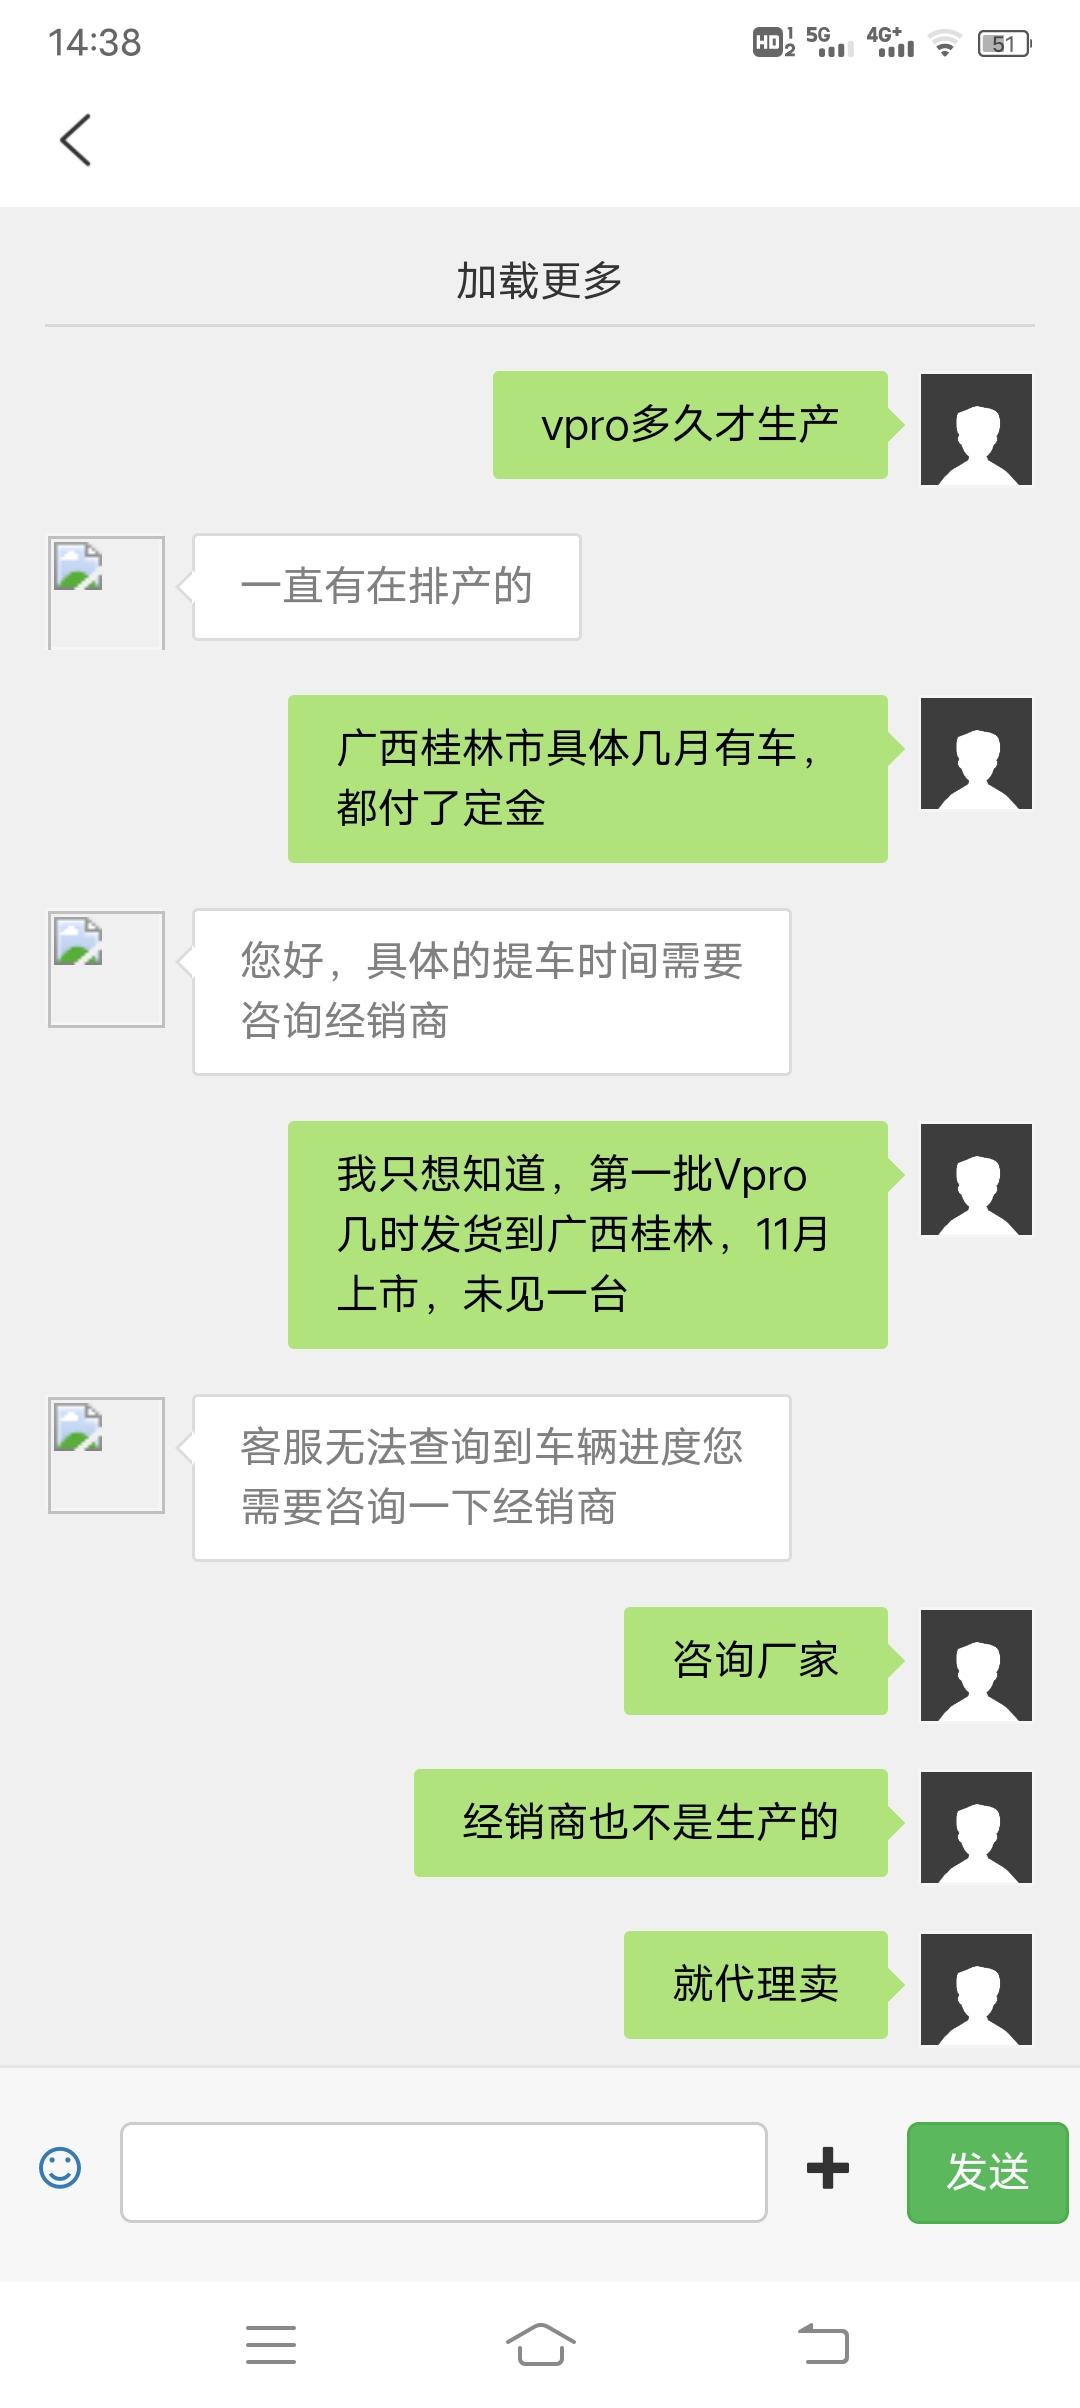 哪吒VPro到底何时生厂，近三个月，广西桂林2家4s店一台都没到店。